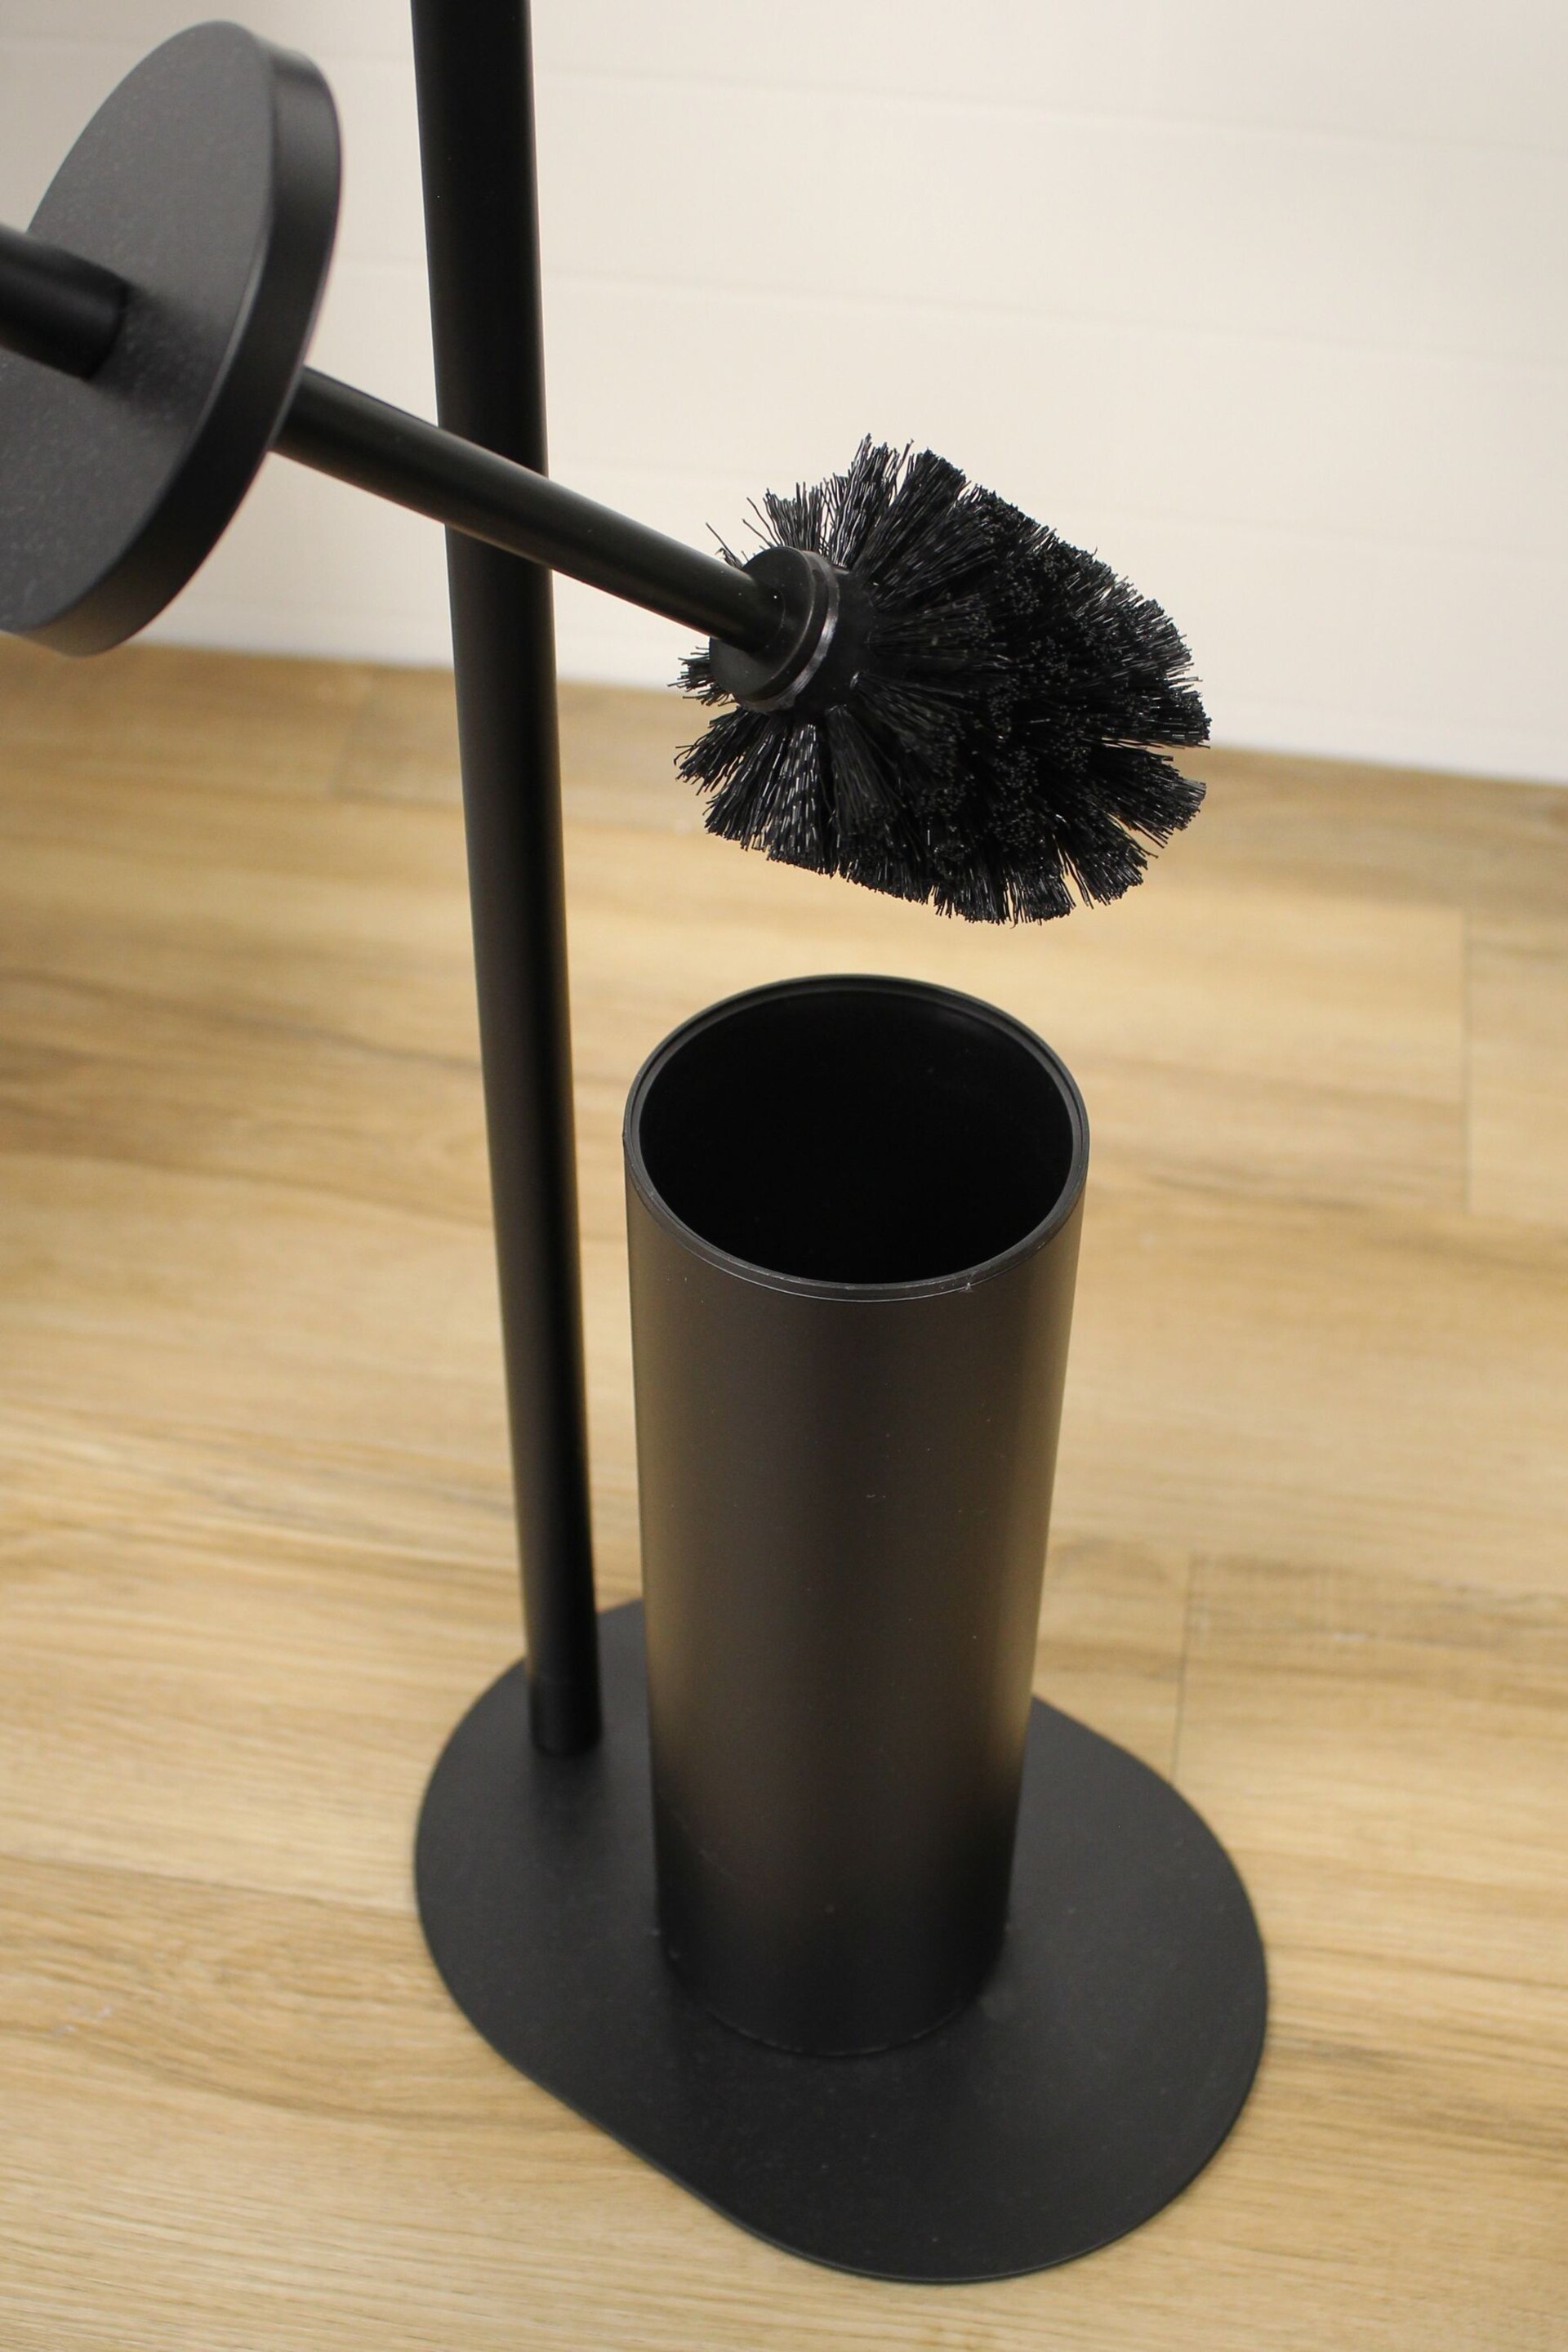 Showerdrape Black Aspen Freestanding Toilet Roll Holder and Brush Holder - Image 3 of 4